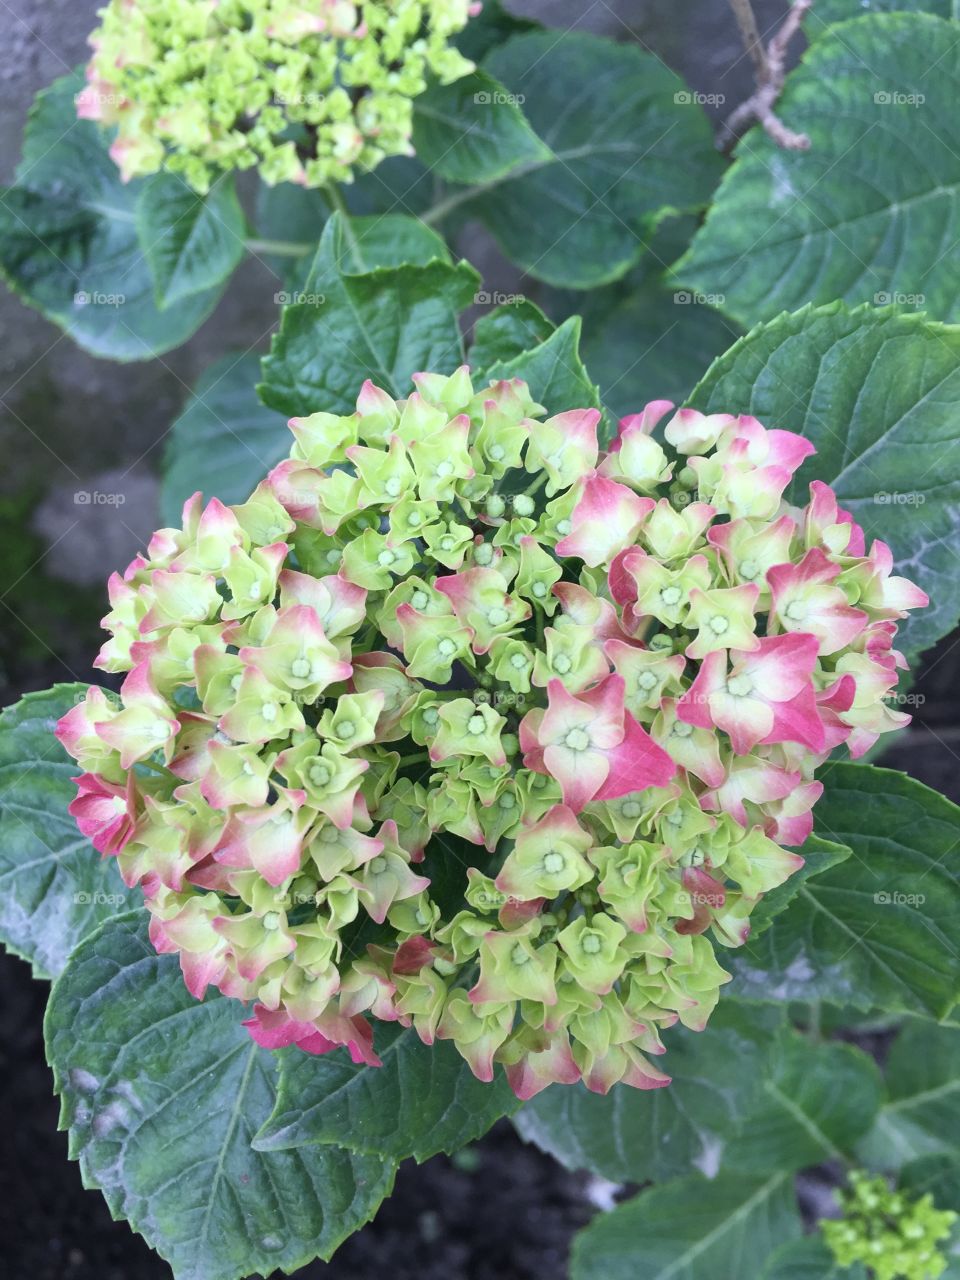 nepalese flower.